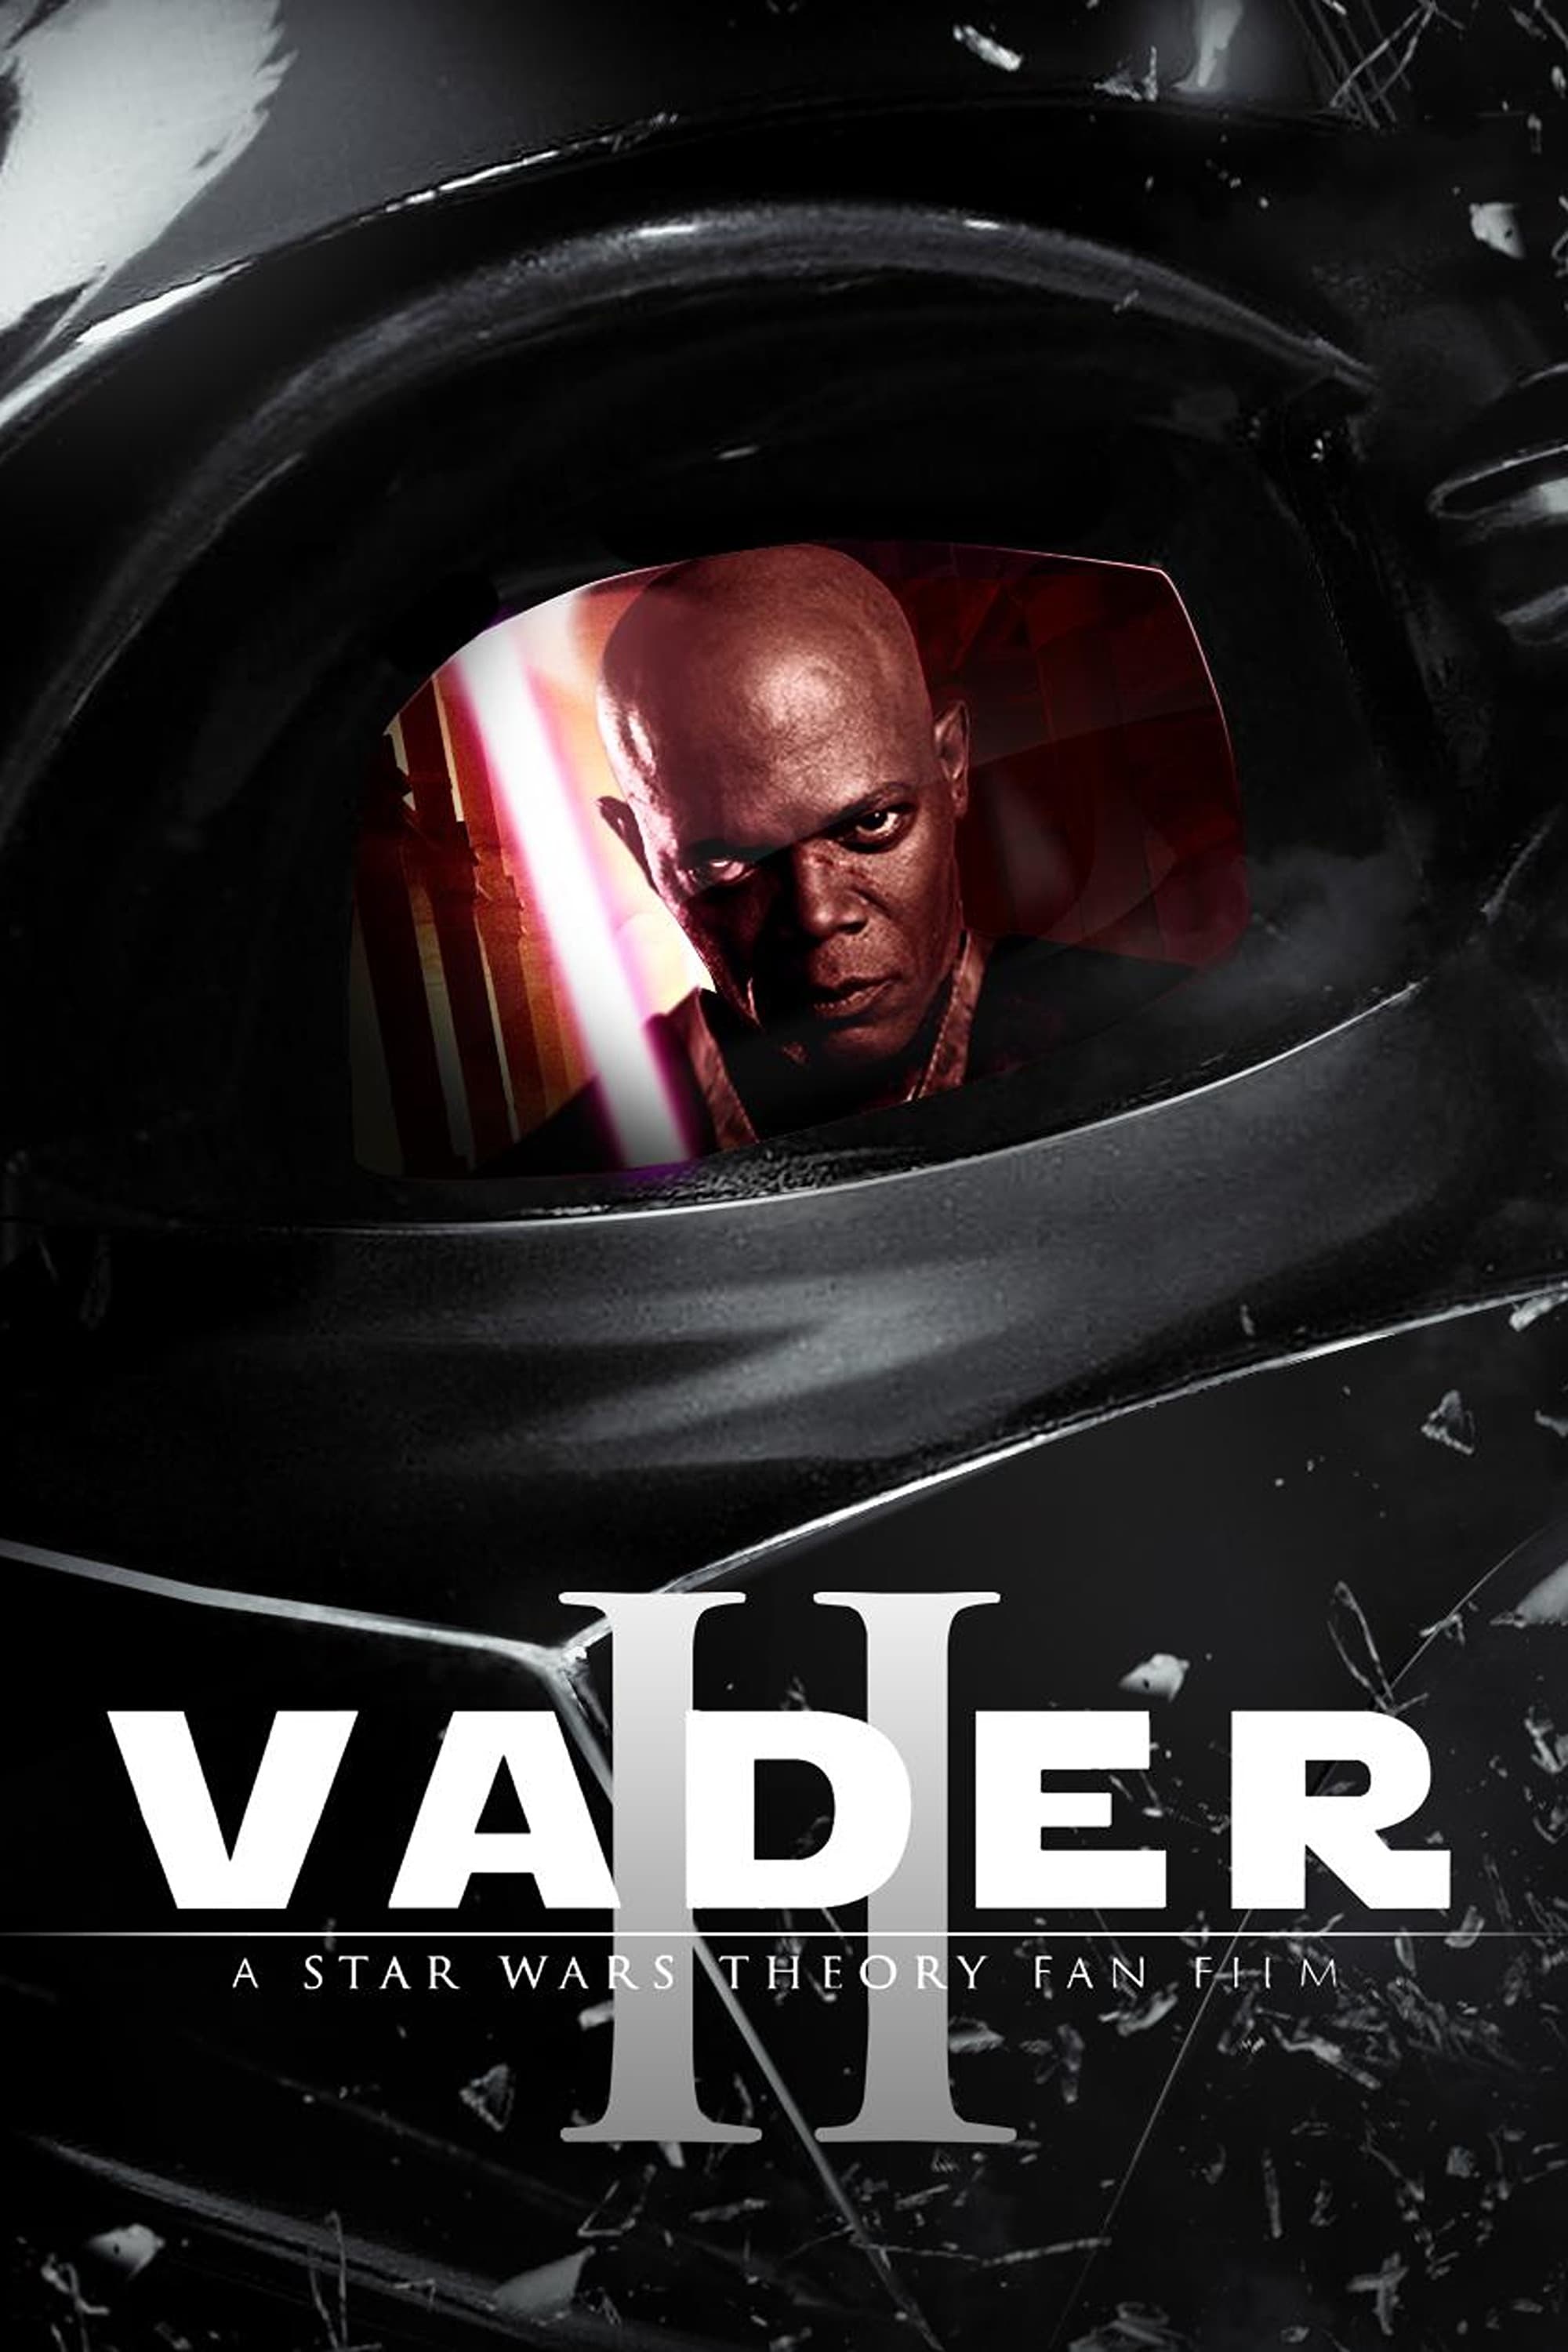 Vader Episode 2: The Amethyst Blade